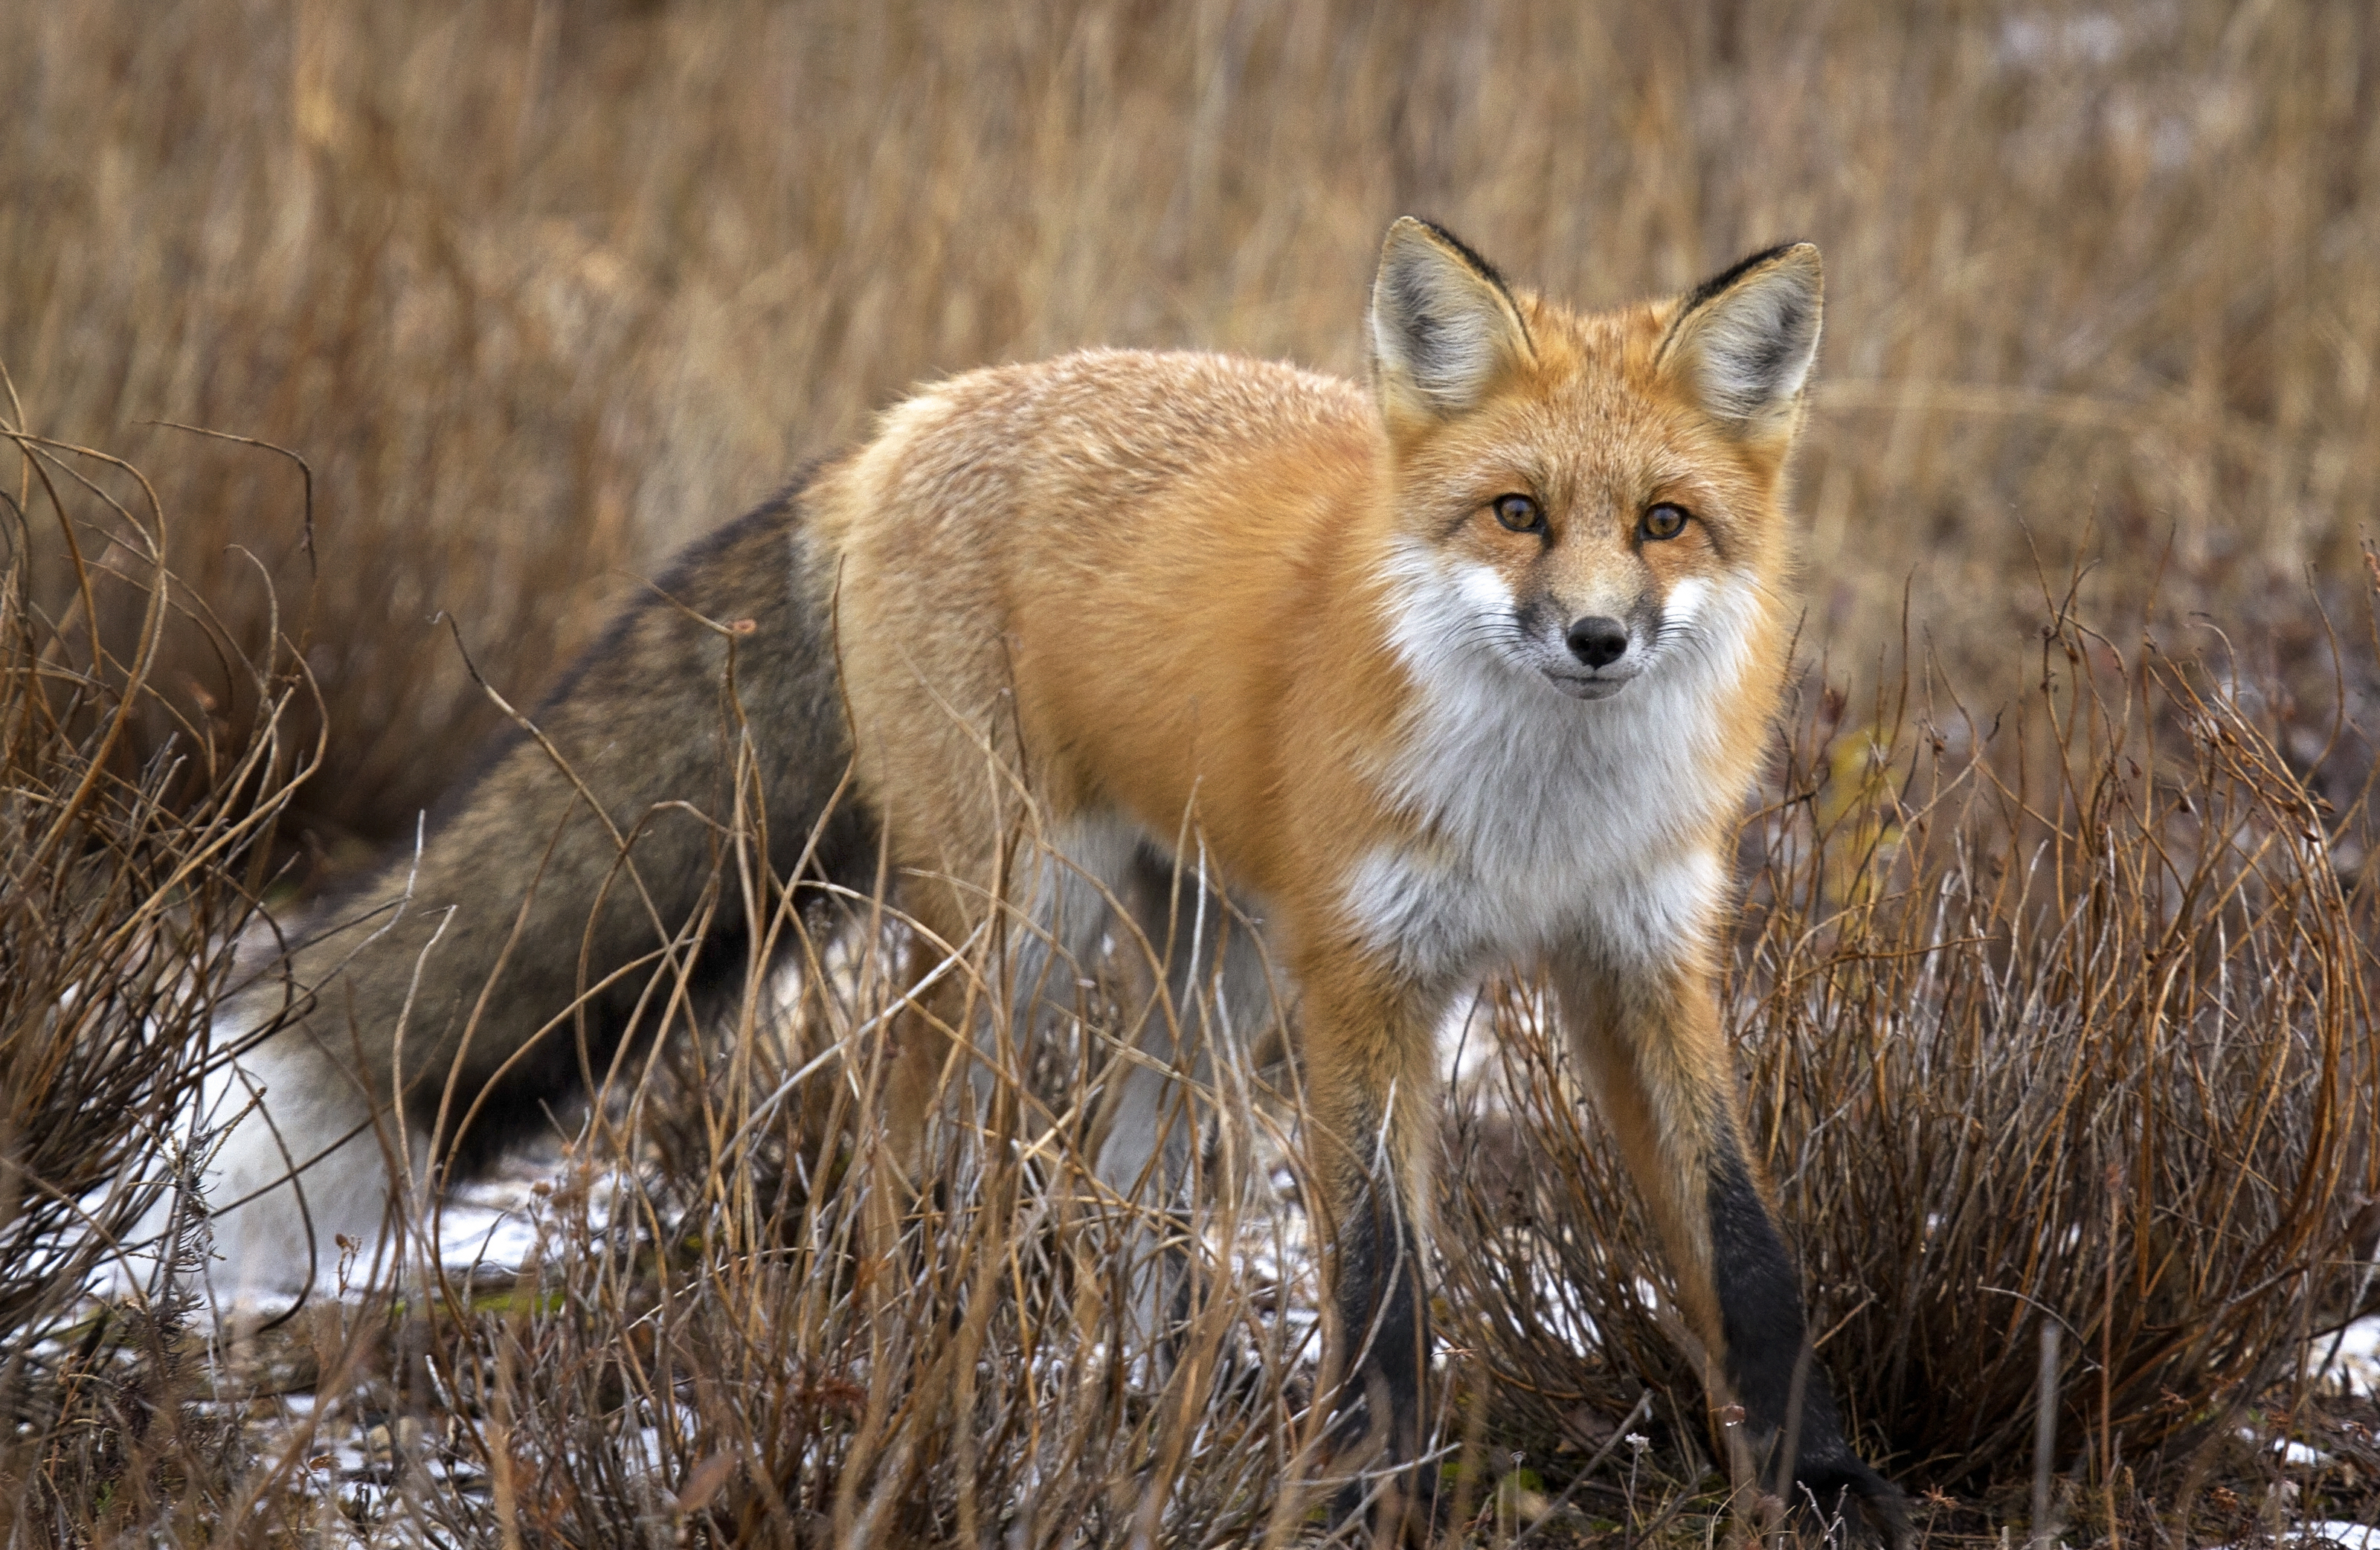 A red fox walking through a field.